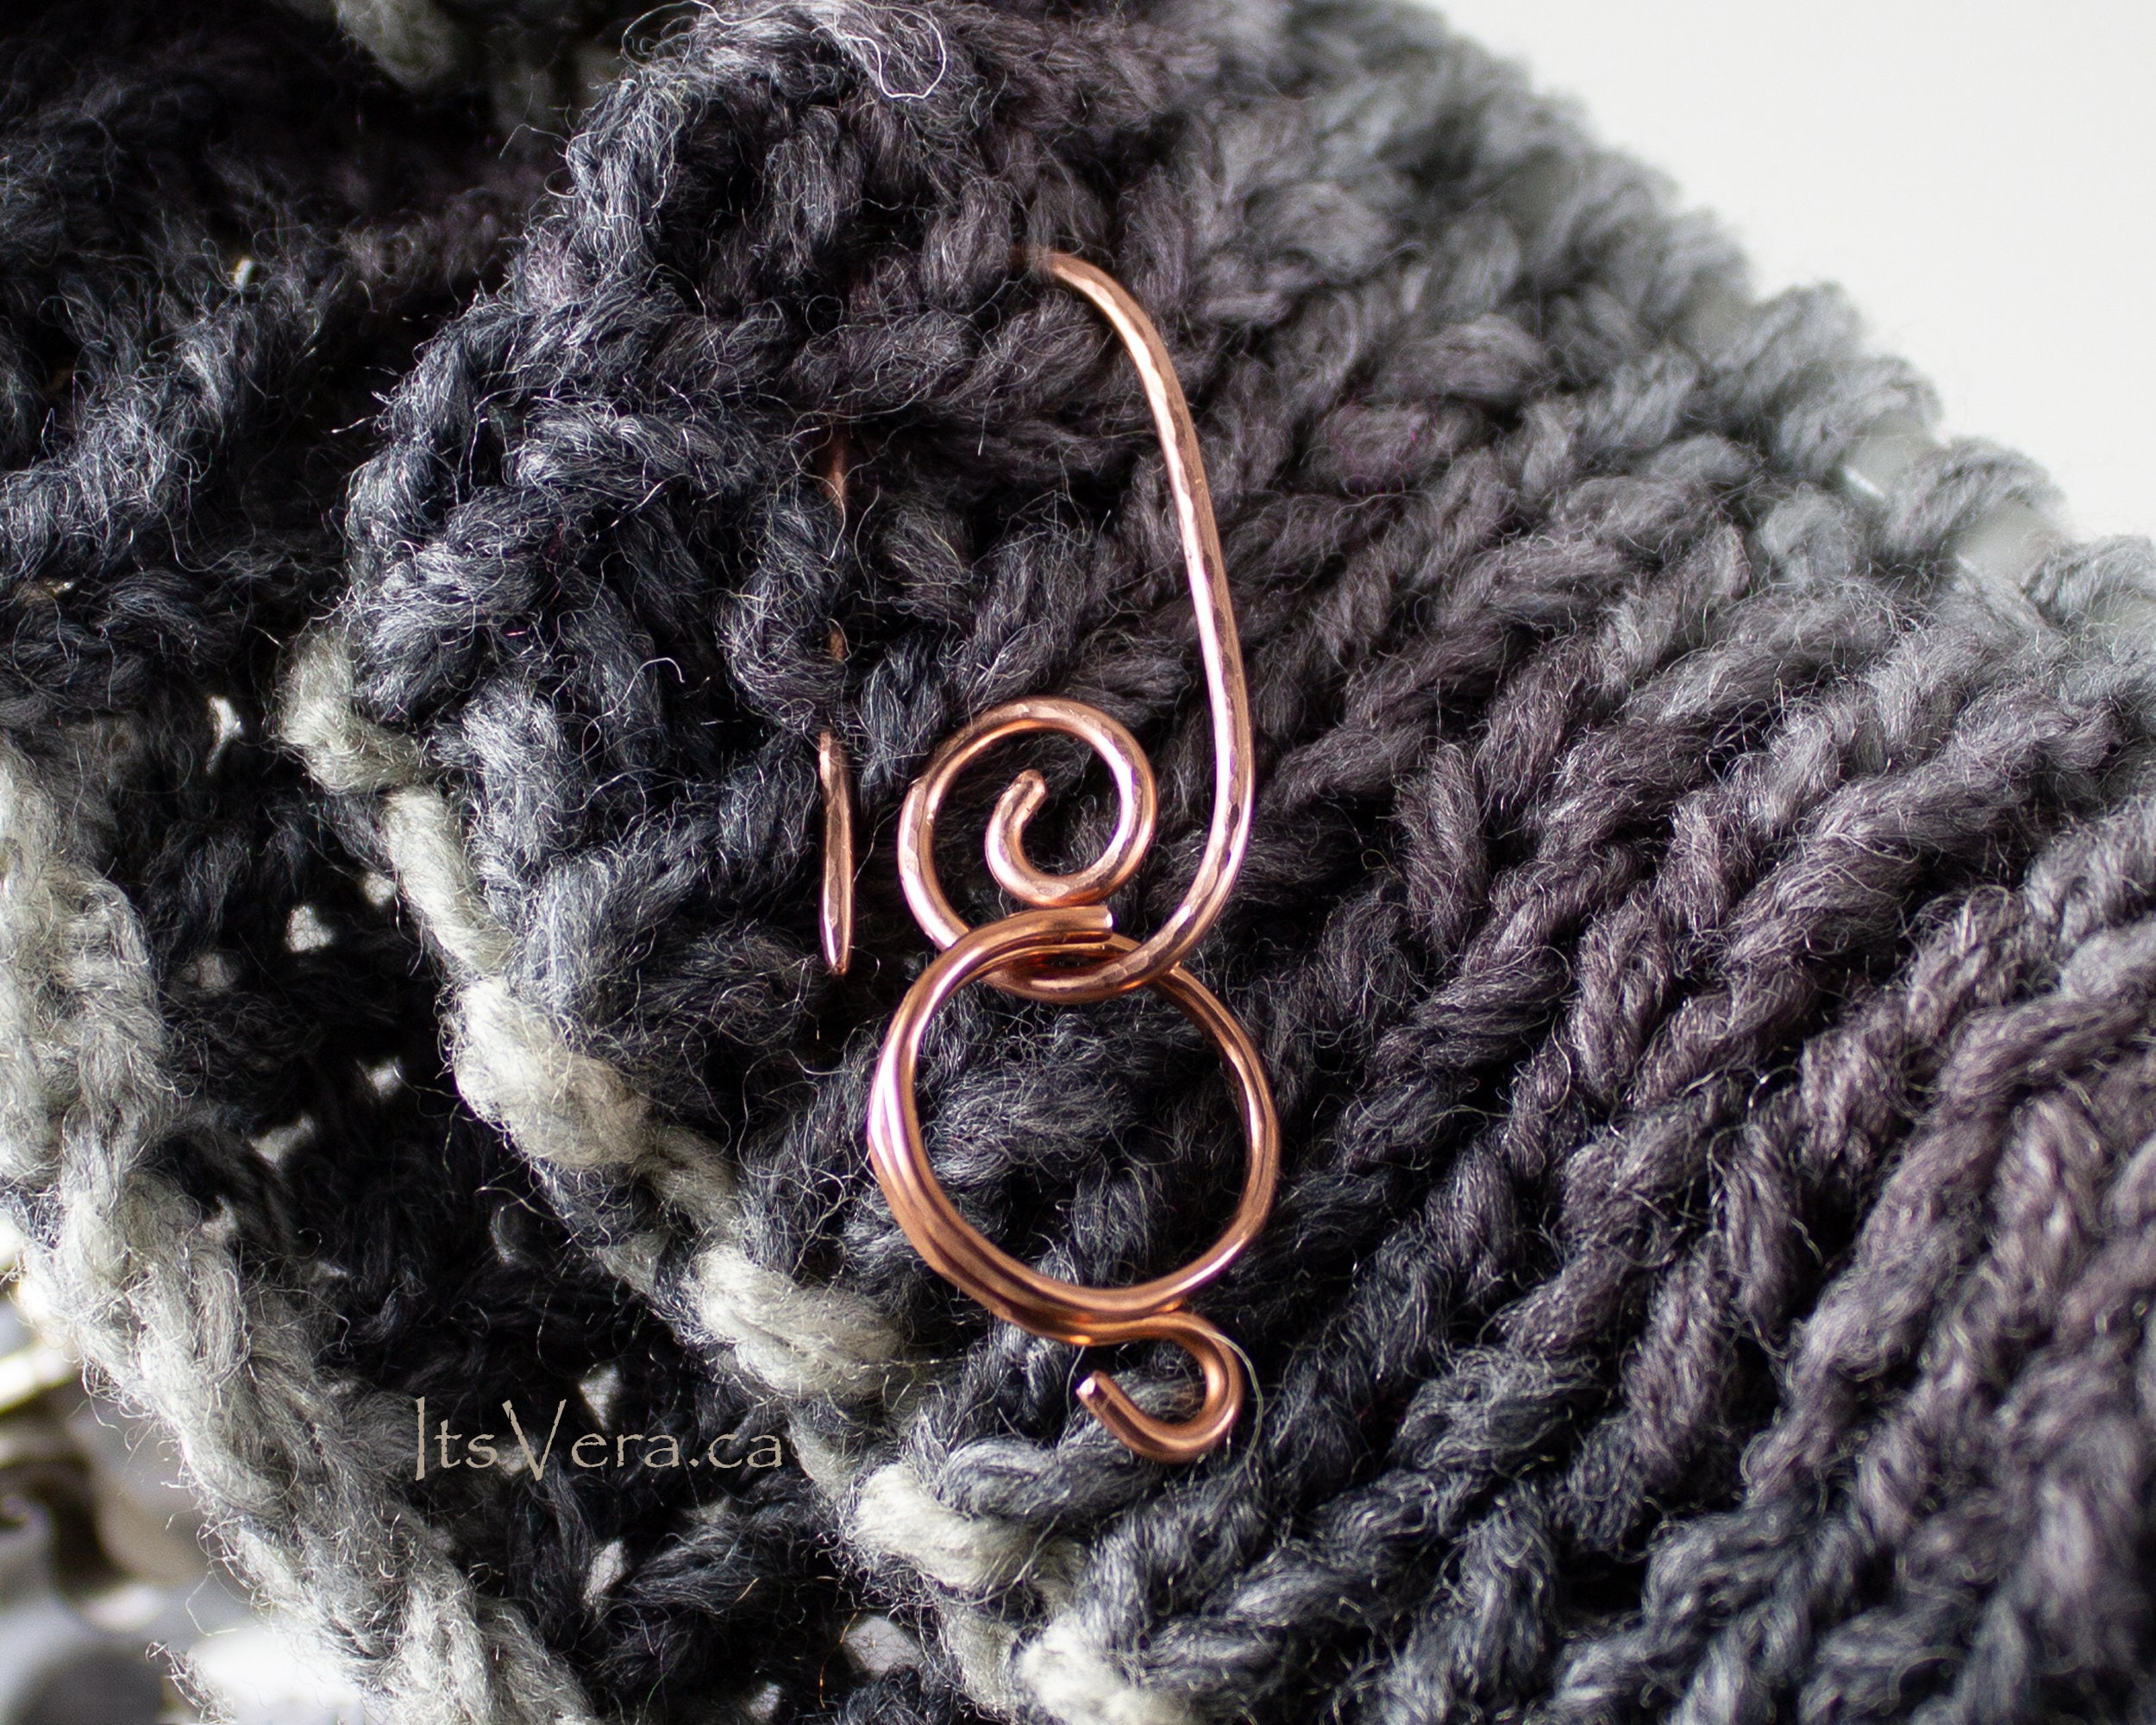 Original Custom 1 Loop Crochet Rings, Bespoke Yarn Rings, Crochet Tools,  Crochet Accessories, Stranding Rings, Yarn Guide Ring, Knitting 